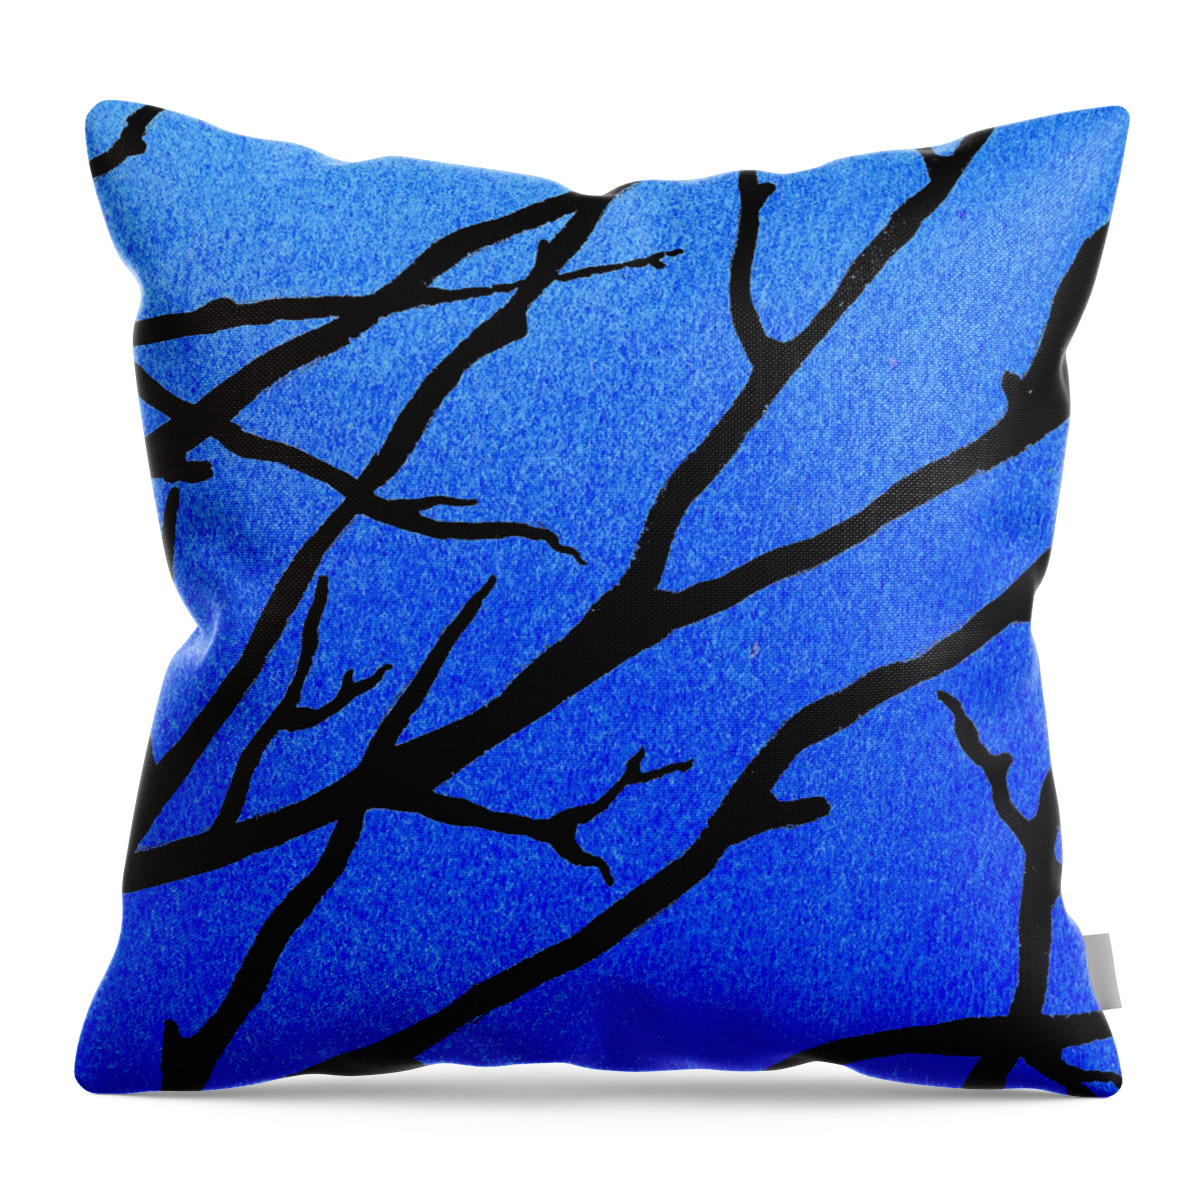 Winter Forest Throw Pillow featuring the painting Ultramarine Forest Winter Blues II by Irina Sztukowski